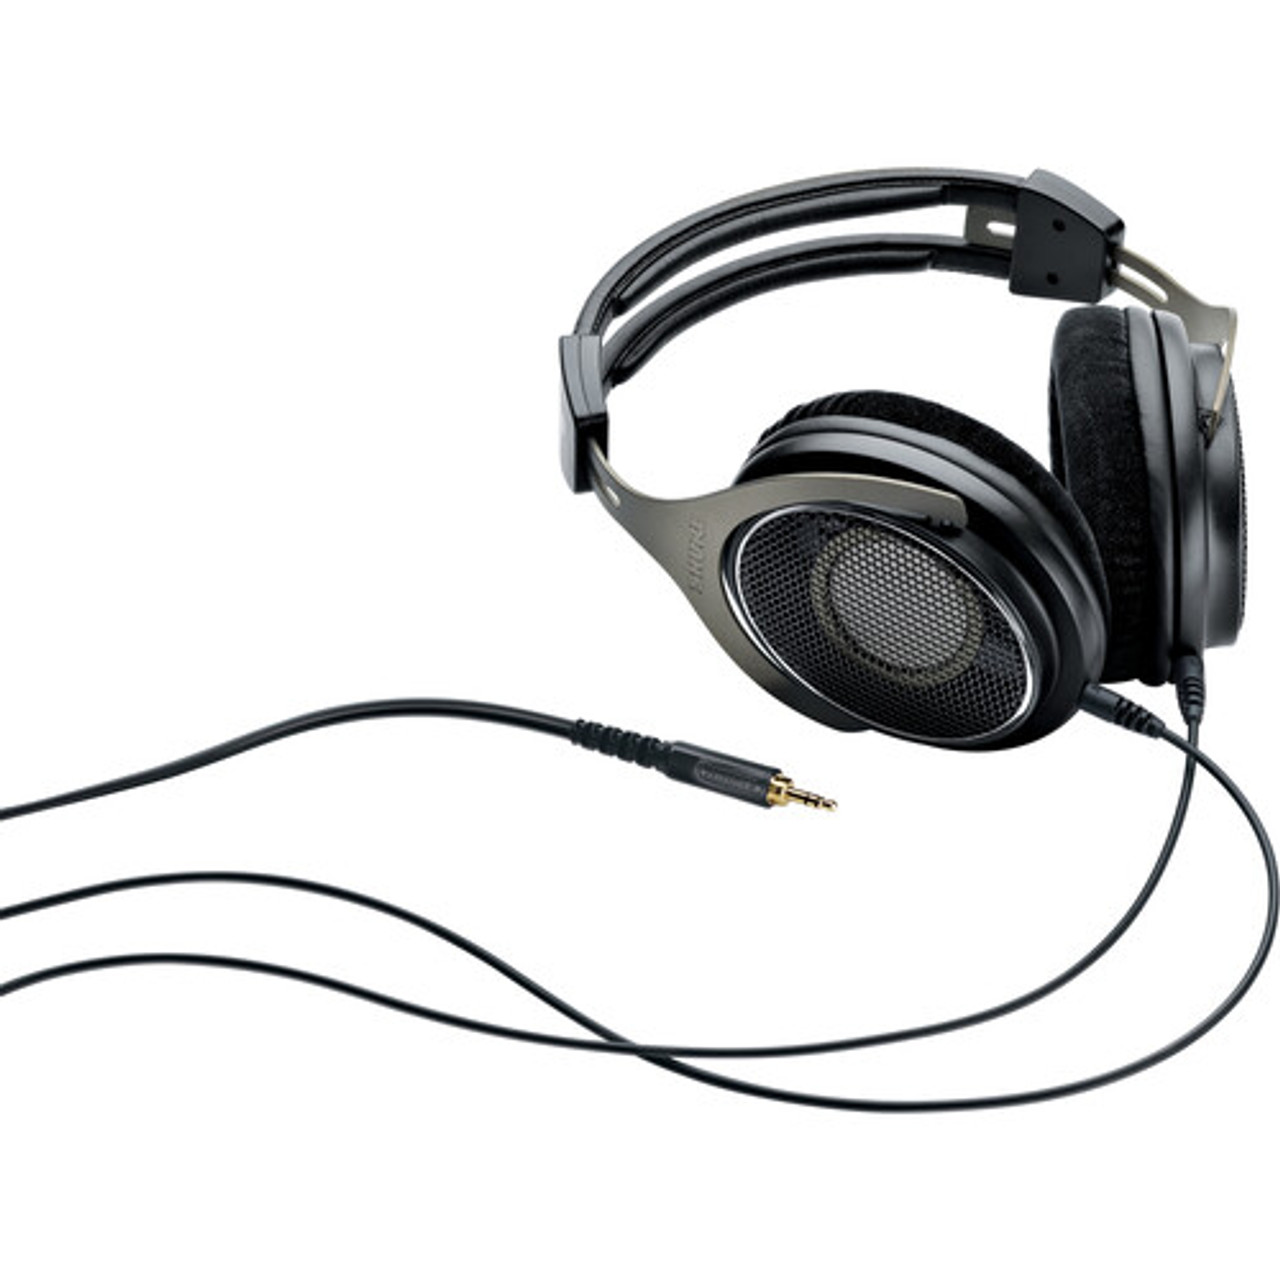 Shure SRH1840-BK Open-Back Over-Ear Headphones (SRH1840-BK)